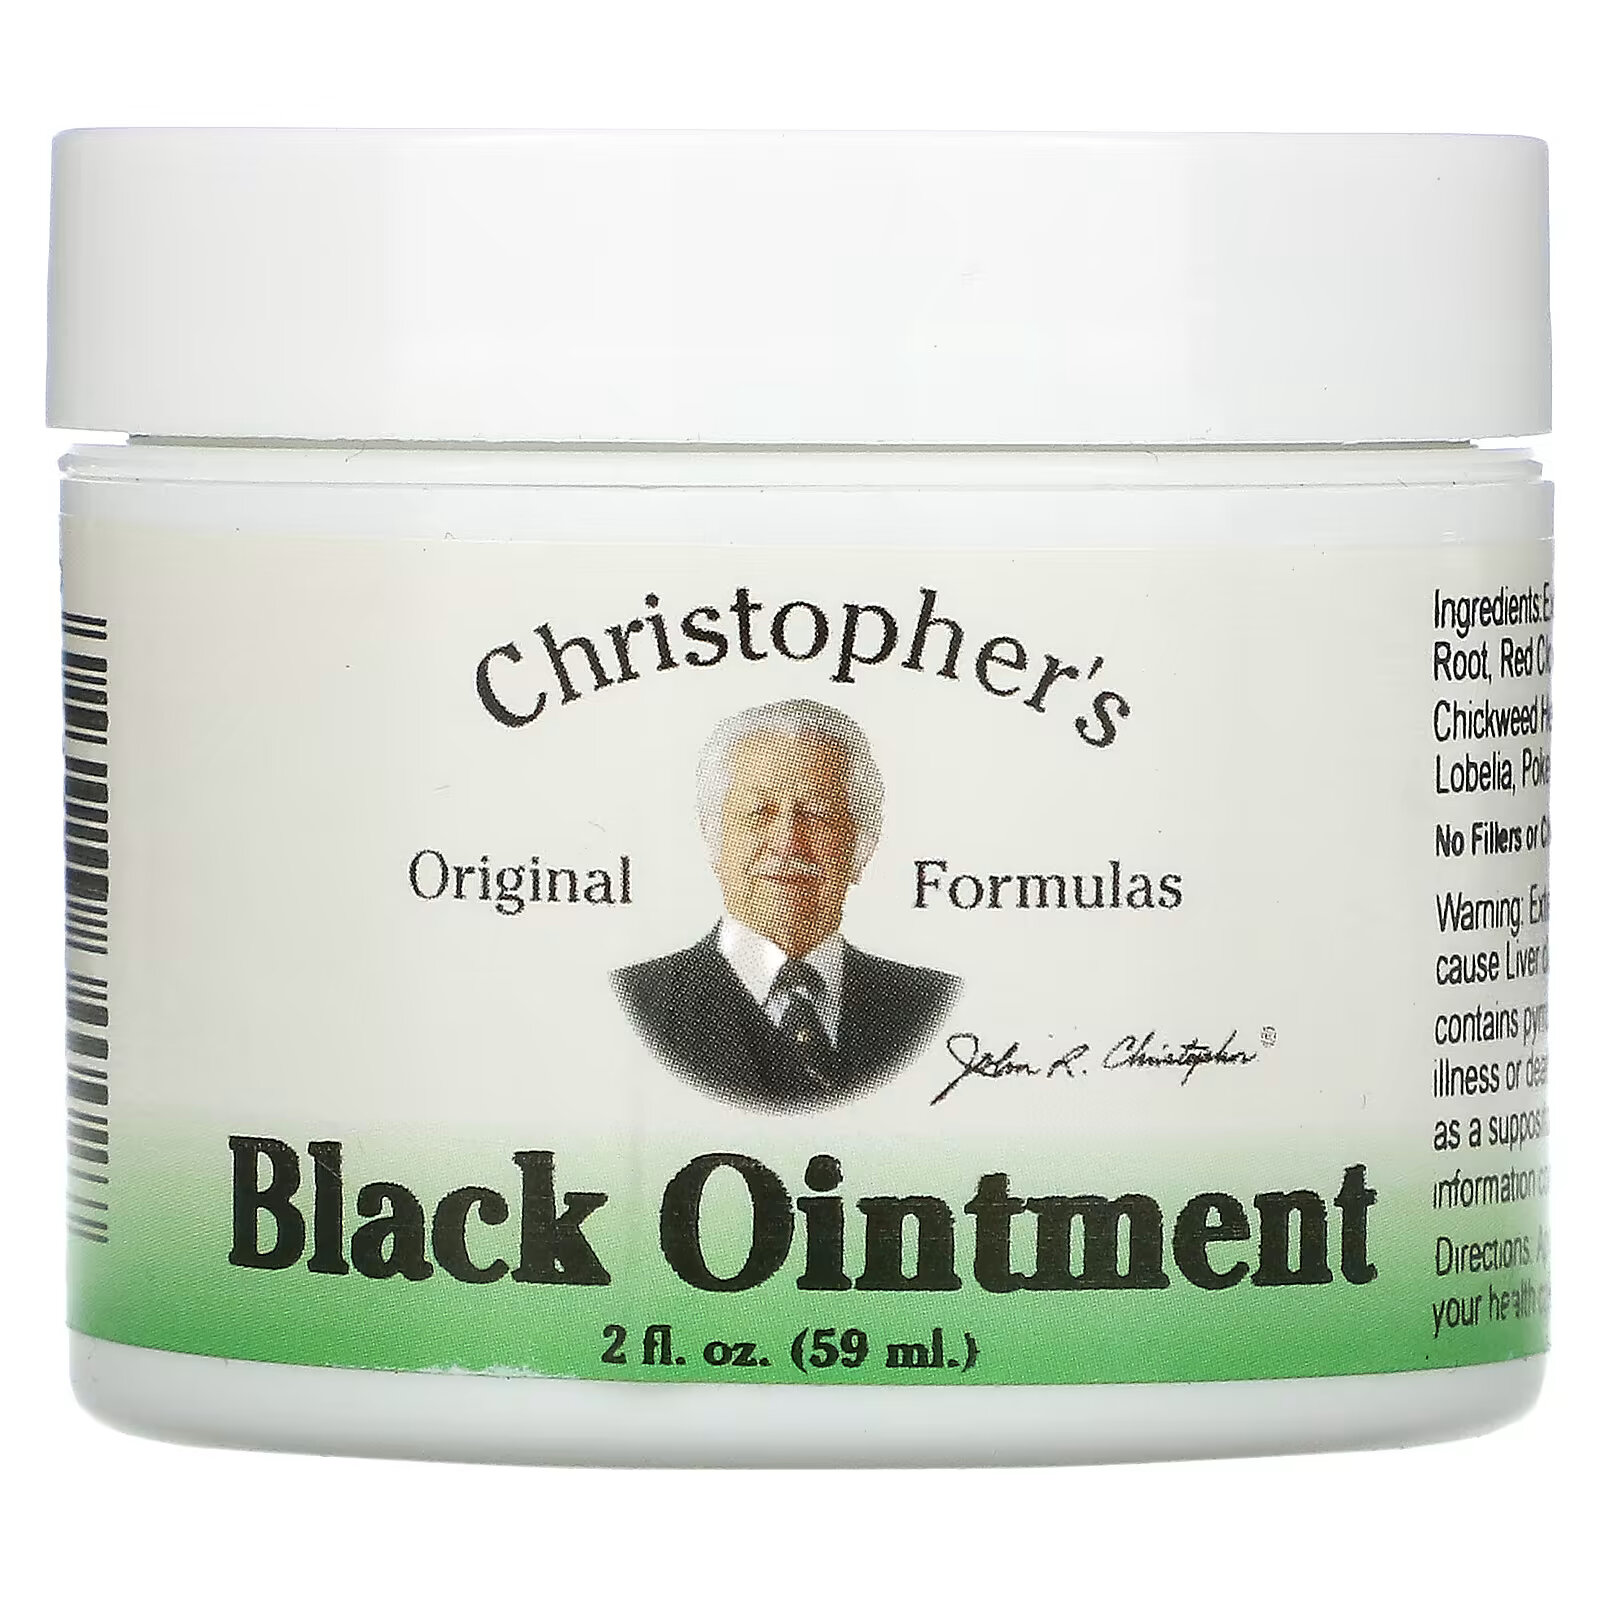 Christopher's Original Formulas, Black Ointment, противовоспалительная, 59 мл (2 жидкие унции) christopher s original formulas экстракт relax eze 2 жидкие унции 59 мл